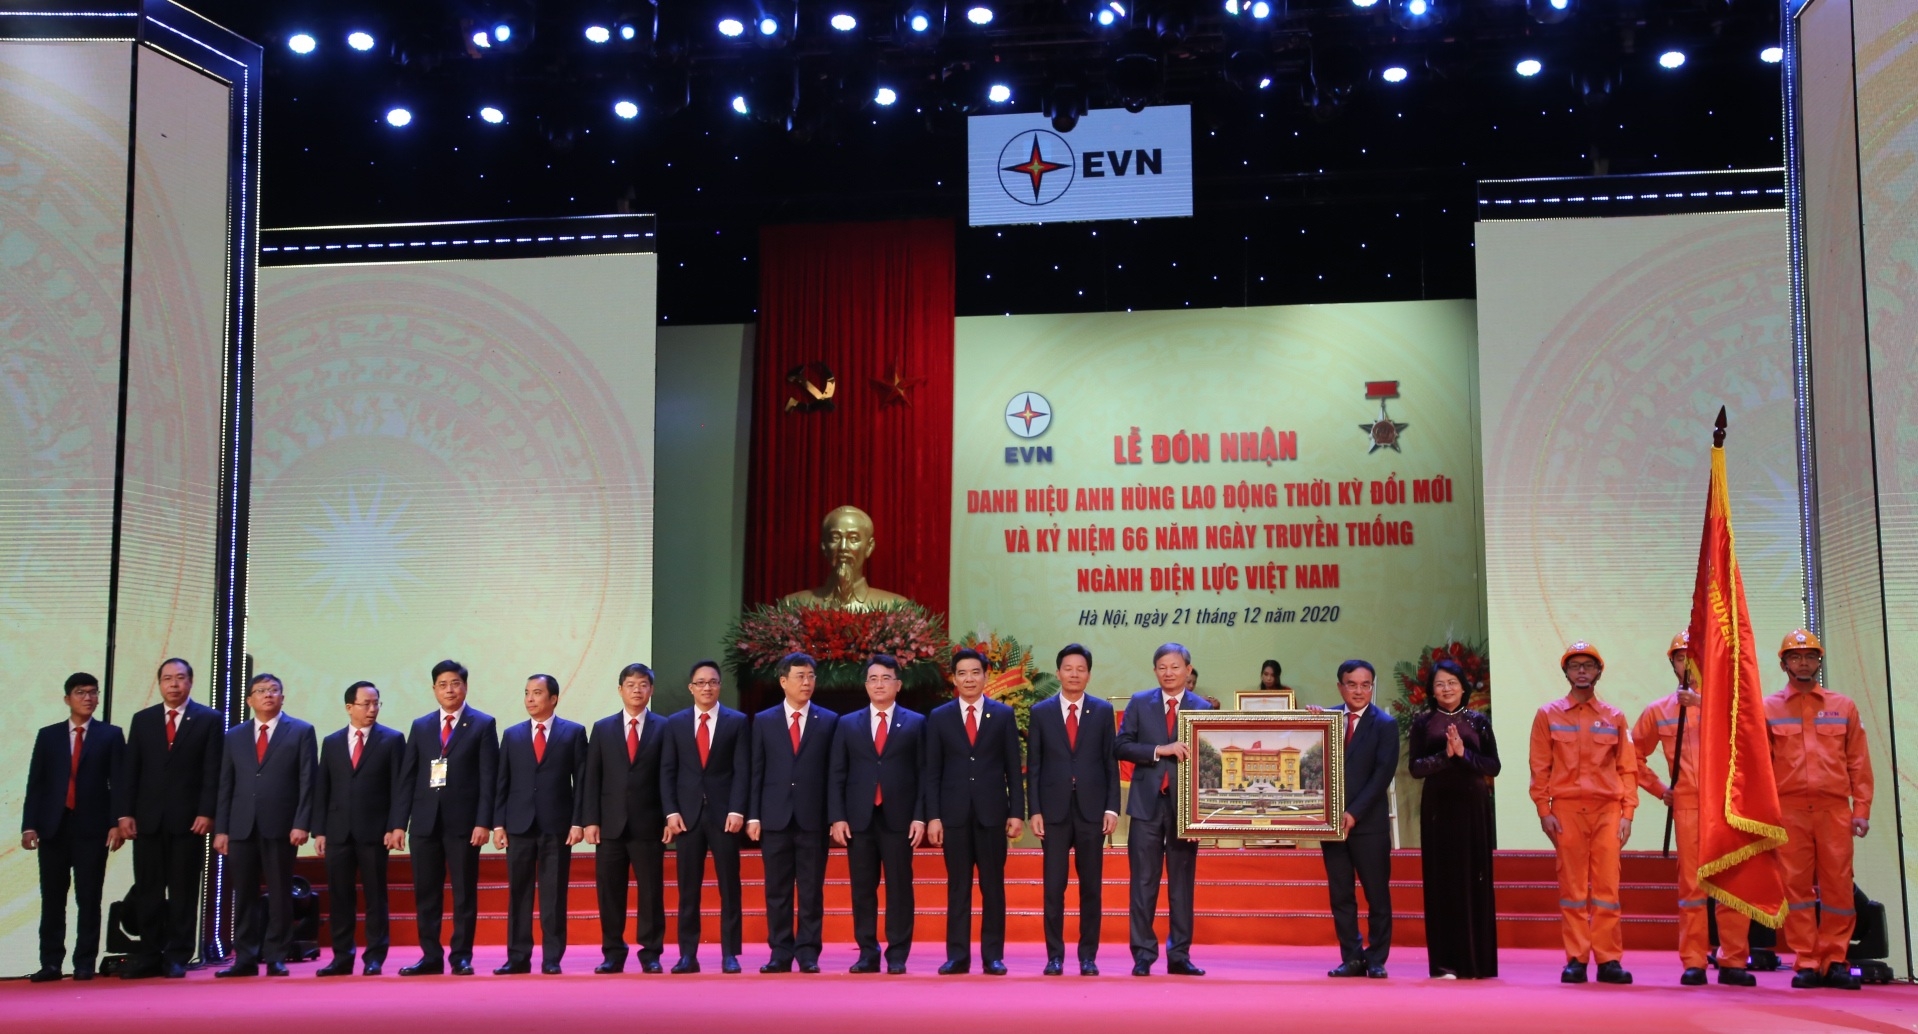 Tập đoàn Điện lực Việt Nam nhận danh hiệu Anh hùng Lao động thời kỳ đổi mới